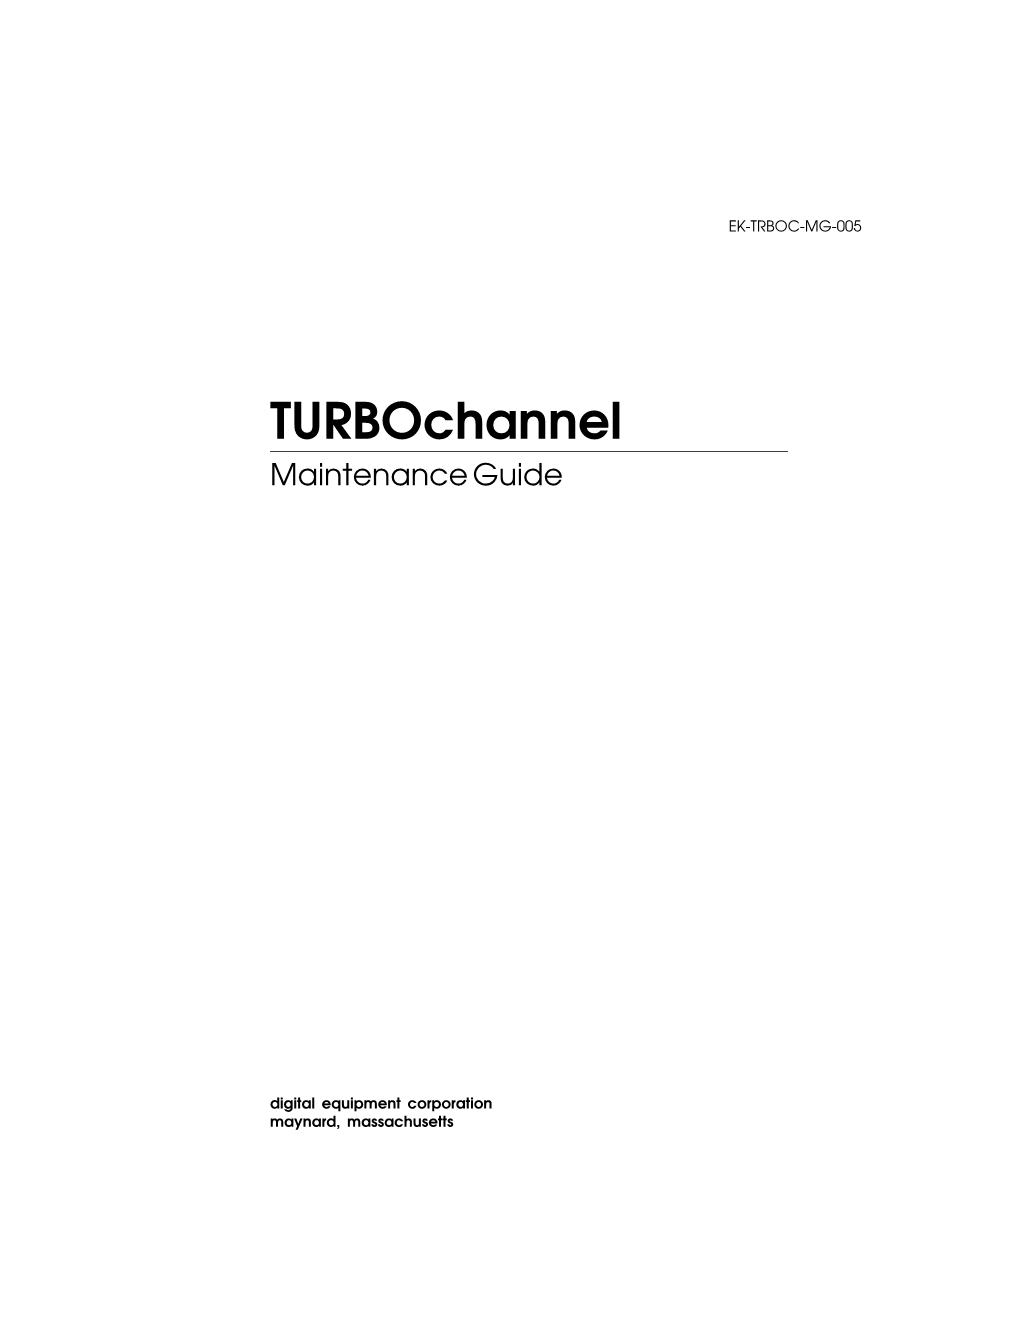 Turbochannel Maintenance Guide